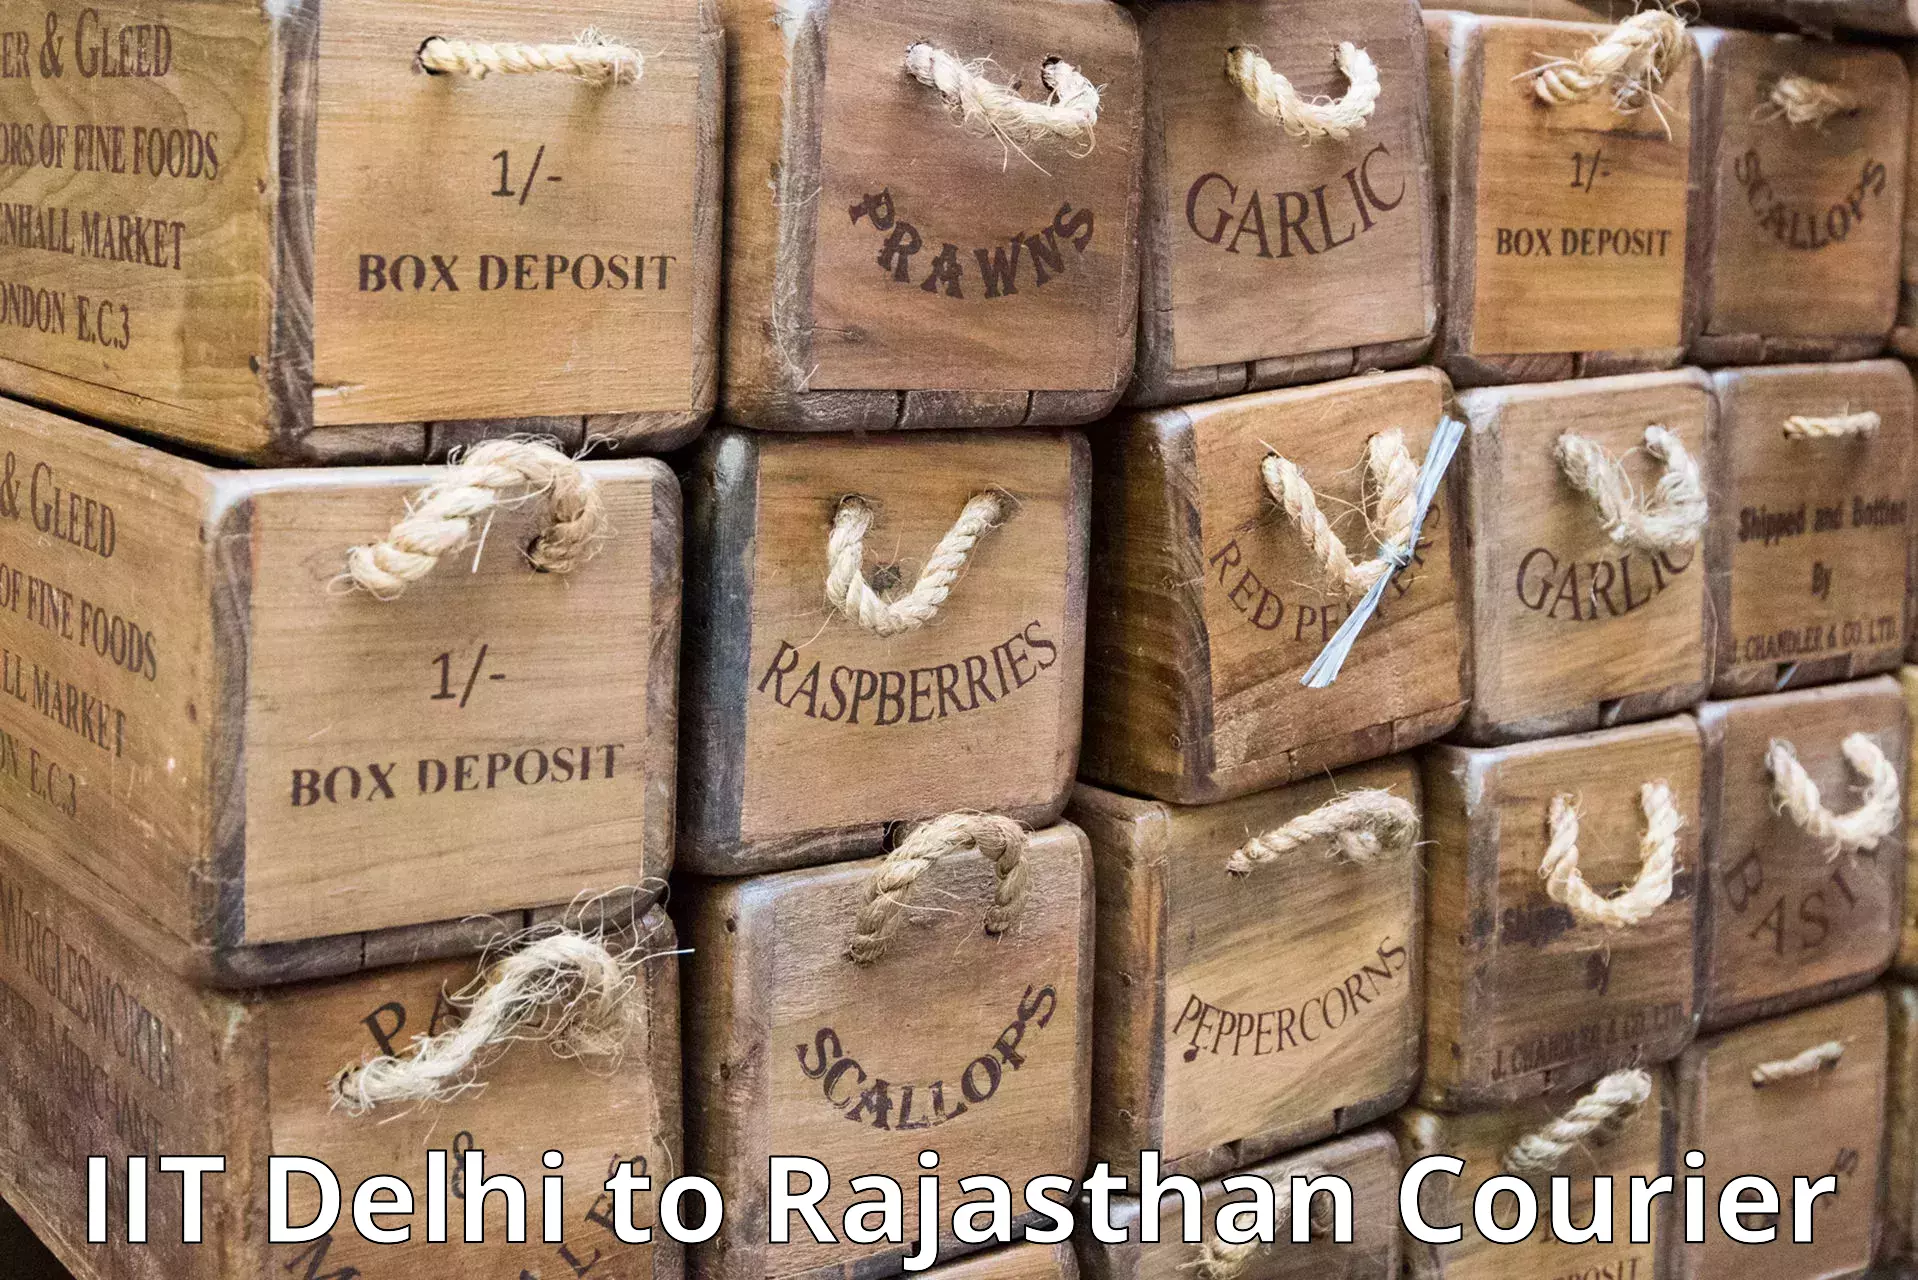 Courier service partnerships IIT Delhi to Behror